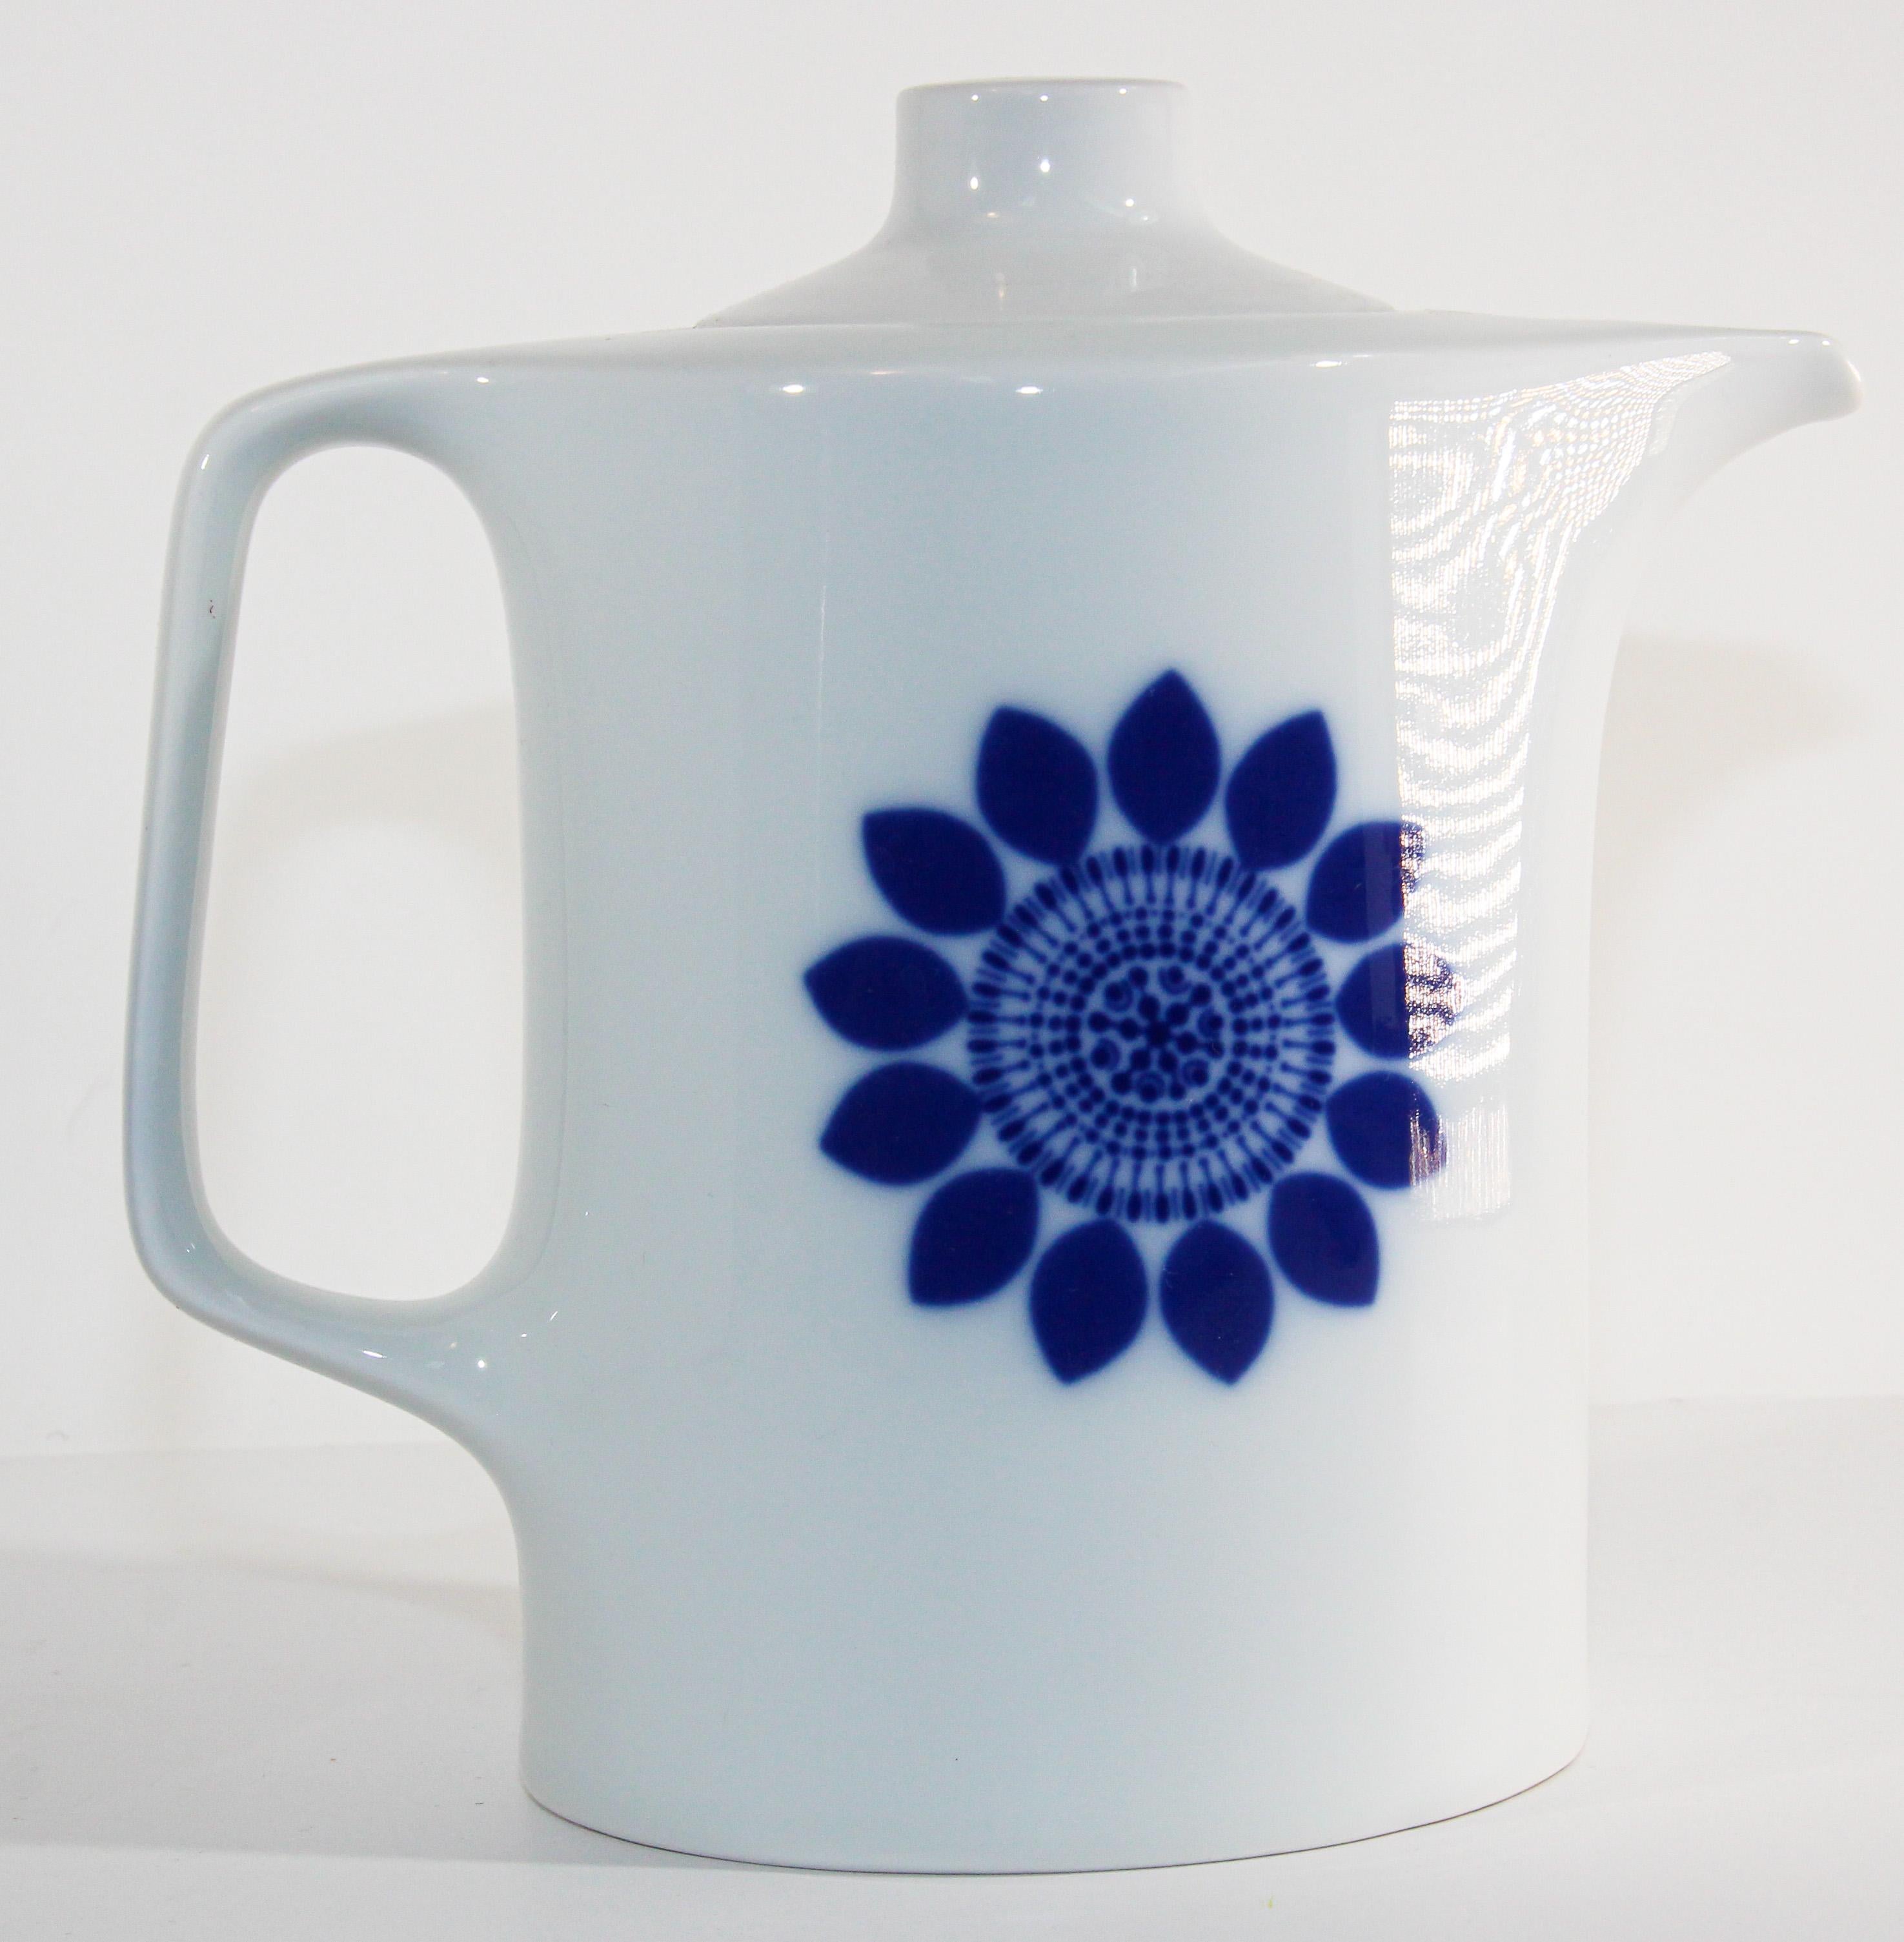 Théière vintage en porcelaine blanche avec couvercle et un motif d'éclatement de fleurs stylisées bleu cobalt sur chaque côté. 
Cafetière ou théière minimaliste en porcelaine
Fabriqué en Allemagne, sorti entre 1968 et 1970, par le célèbre designer